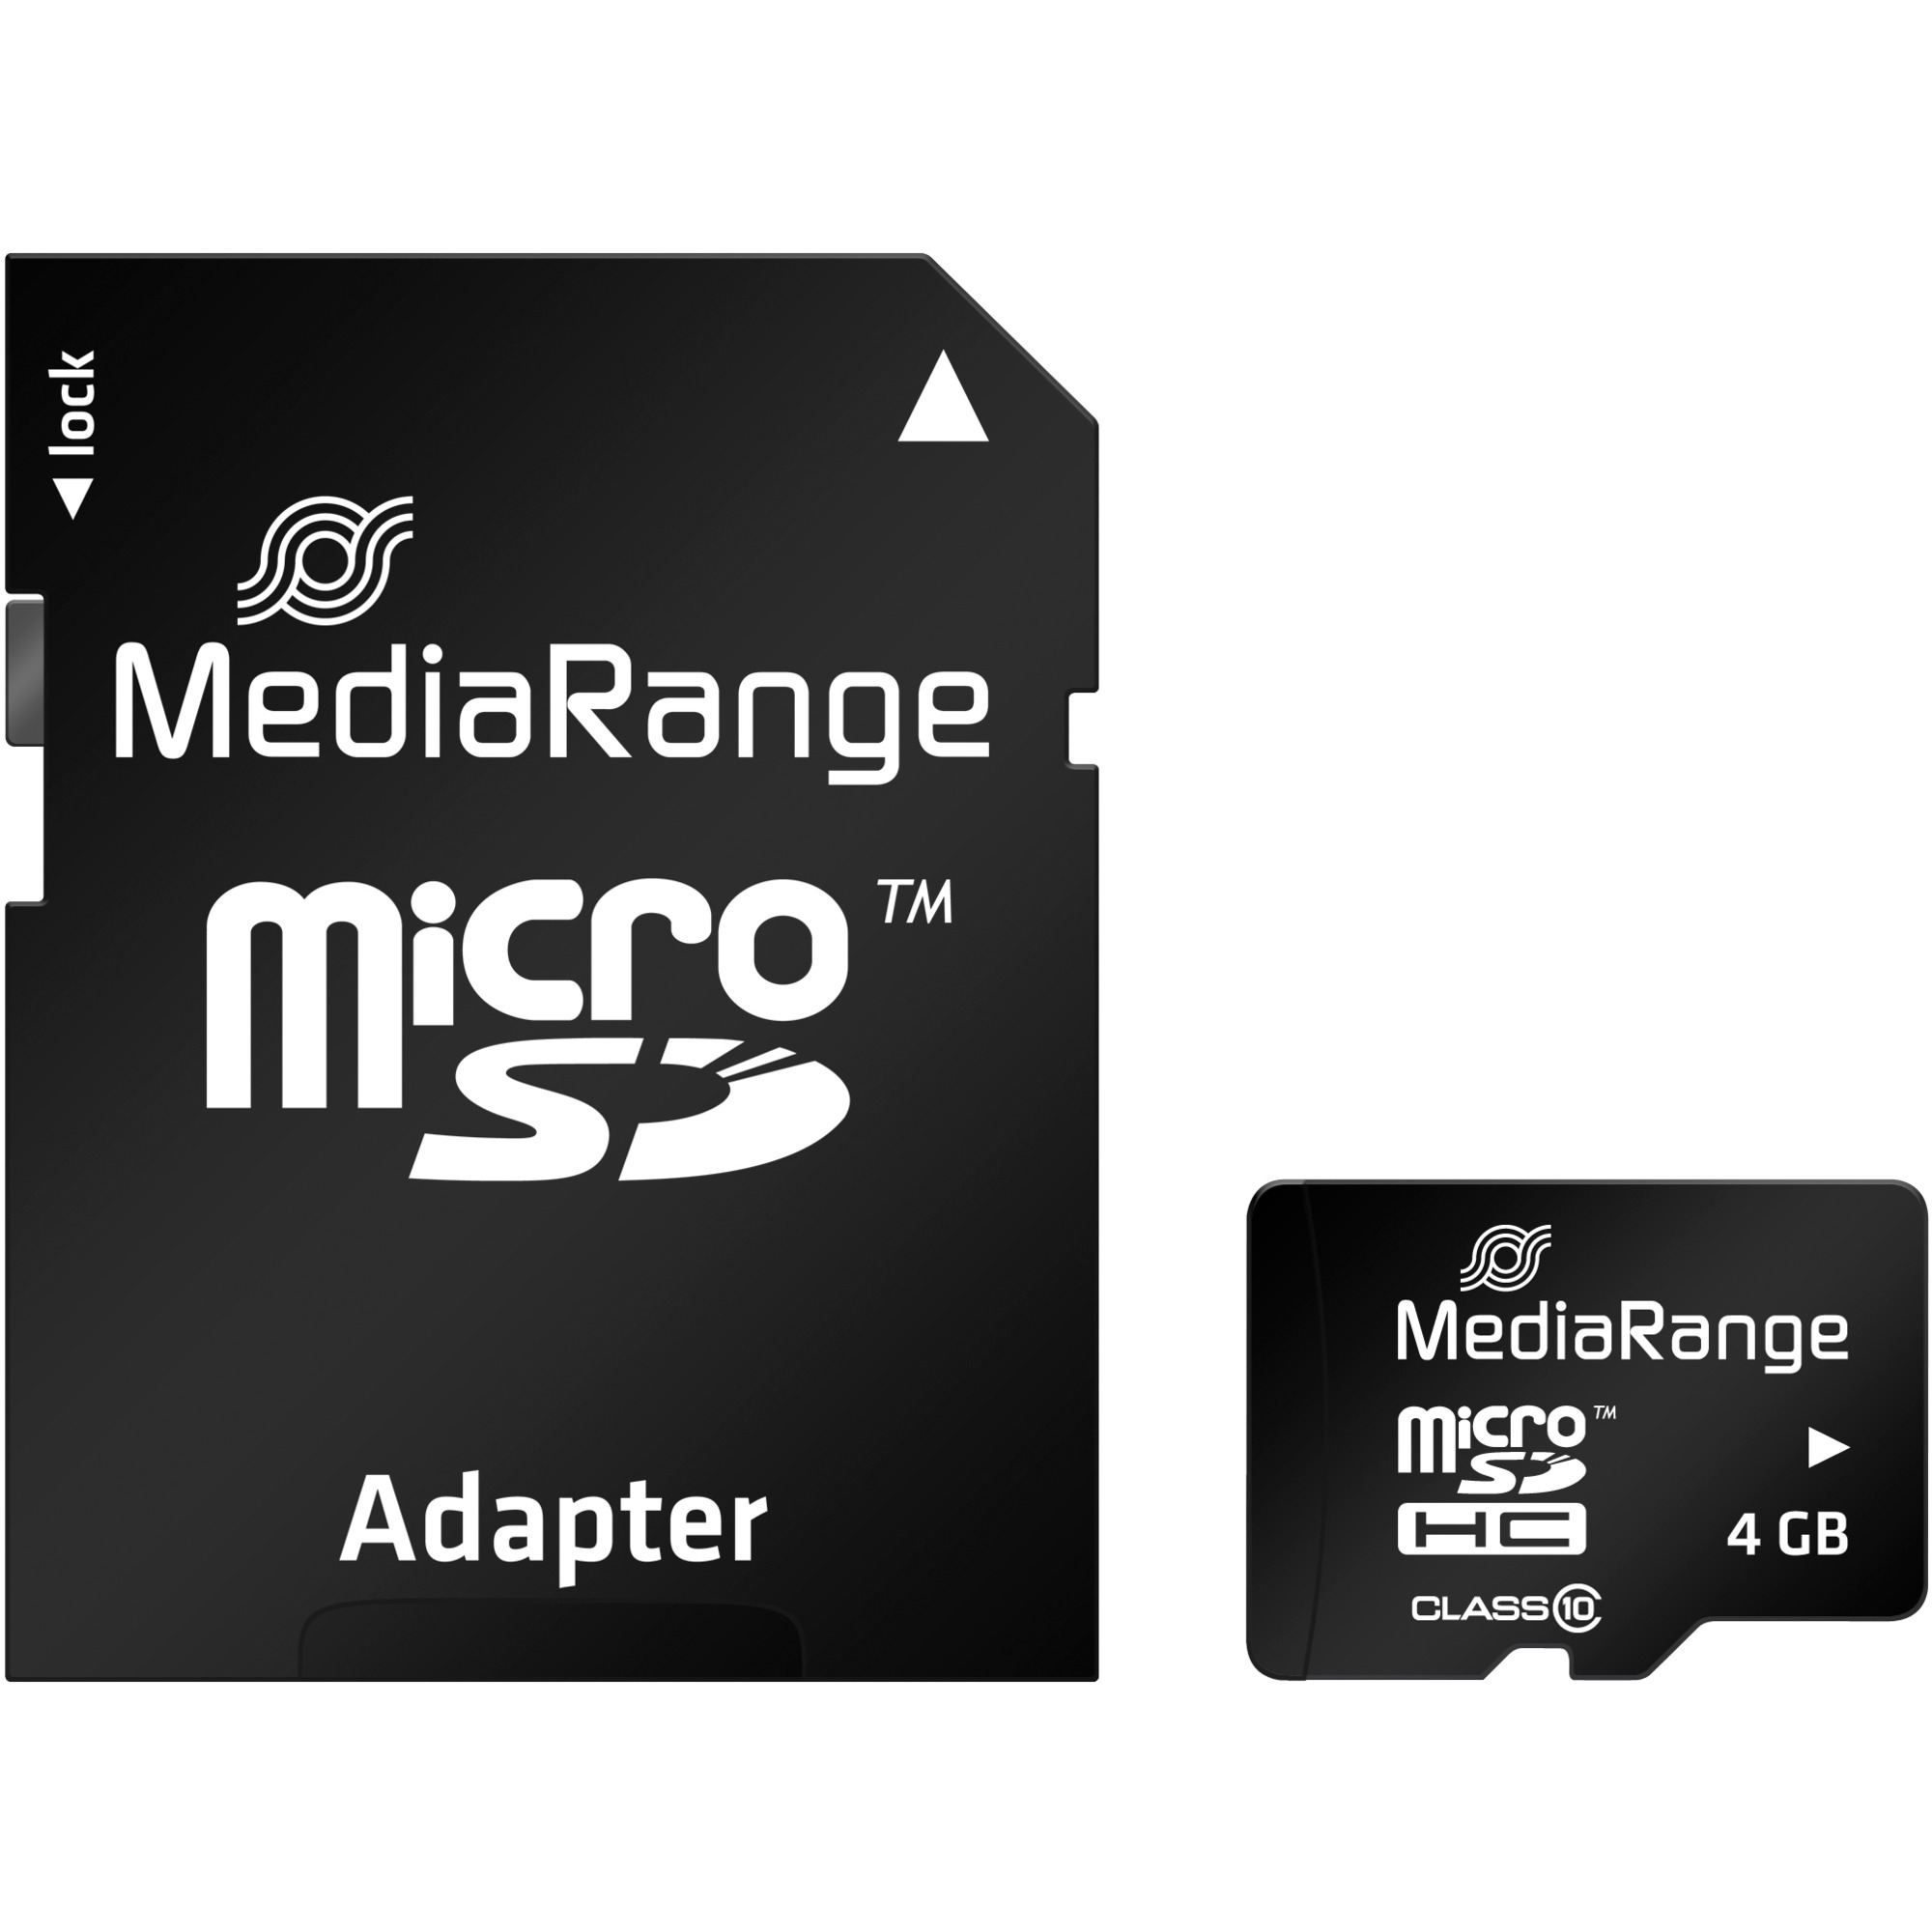 Image of Alternate - 4 GB microSDHC, Speicherkarte online einkaufen bei Alternate